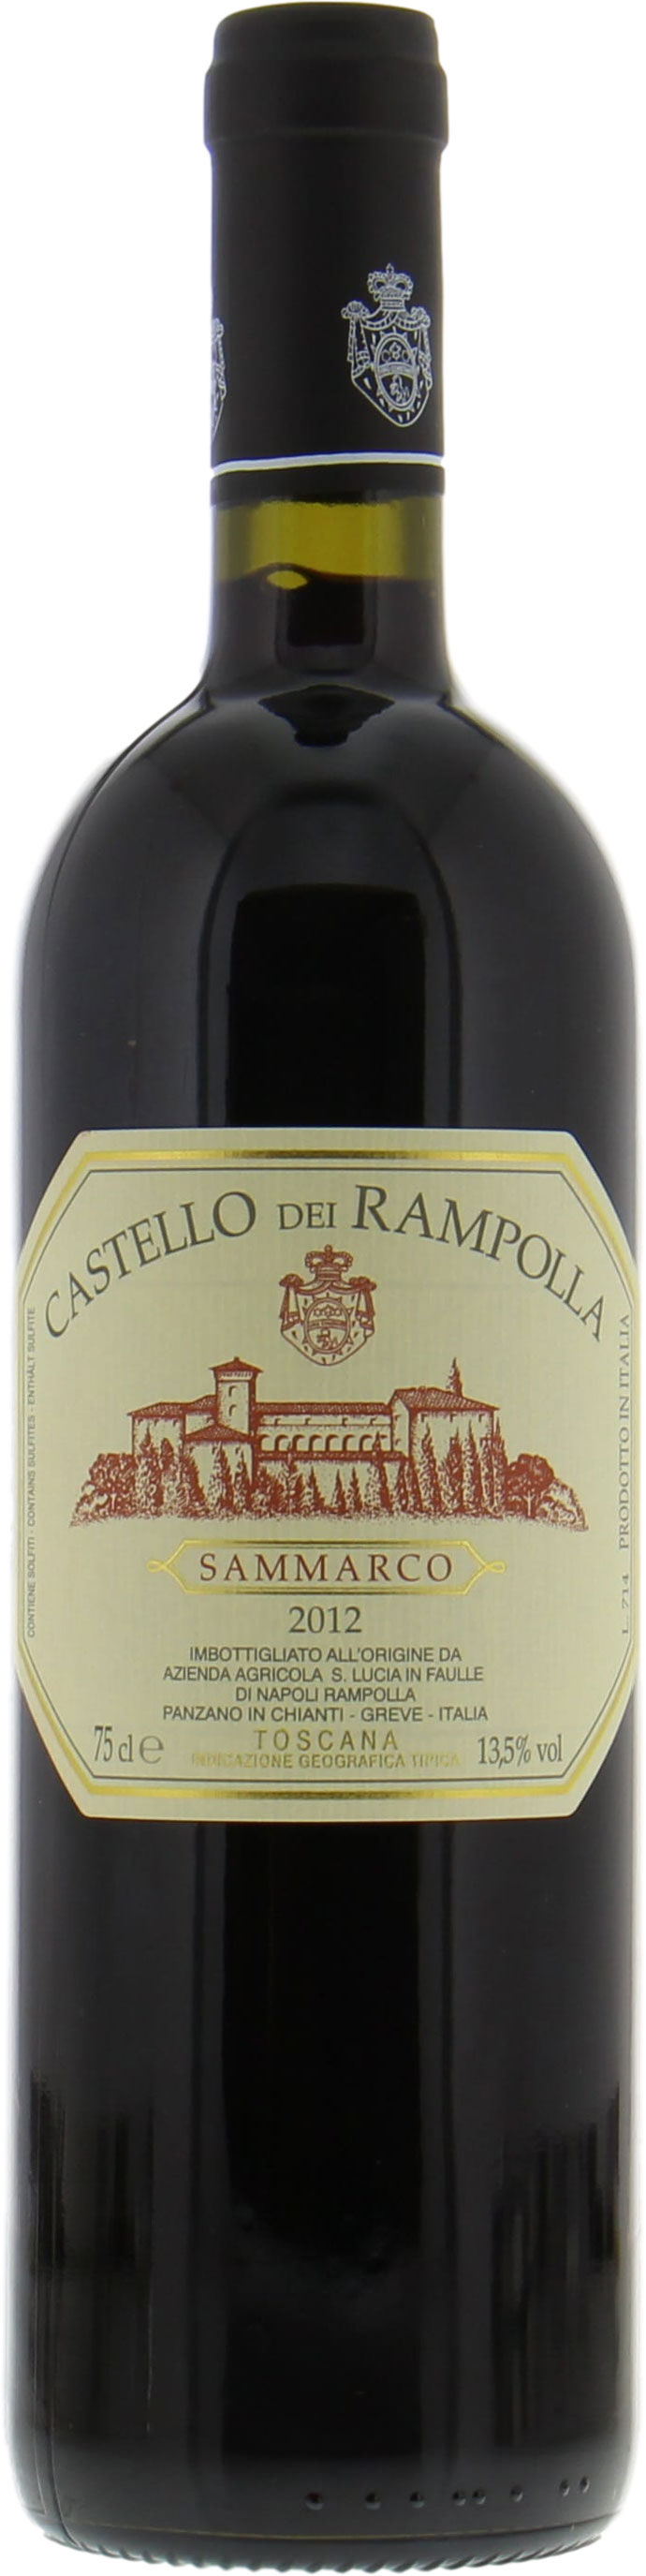 Castello dei Rampolla - Sammarco 2012 Perfect